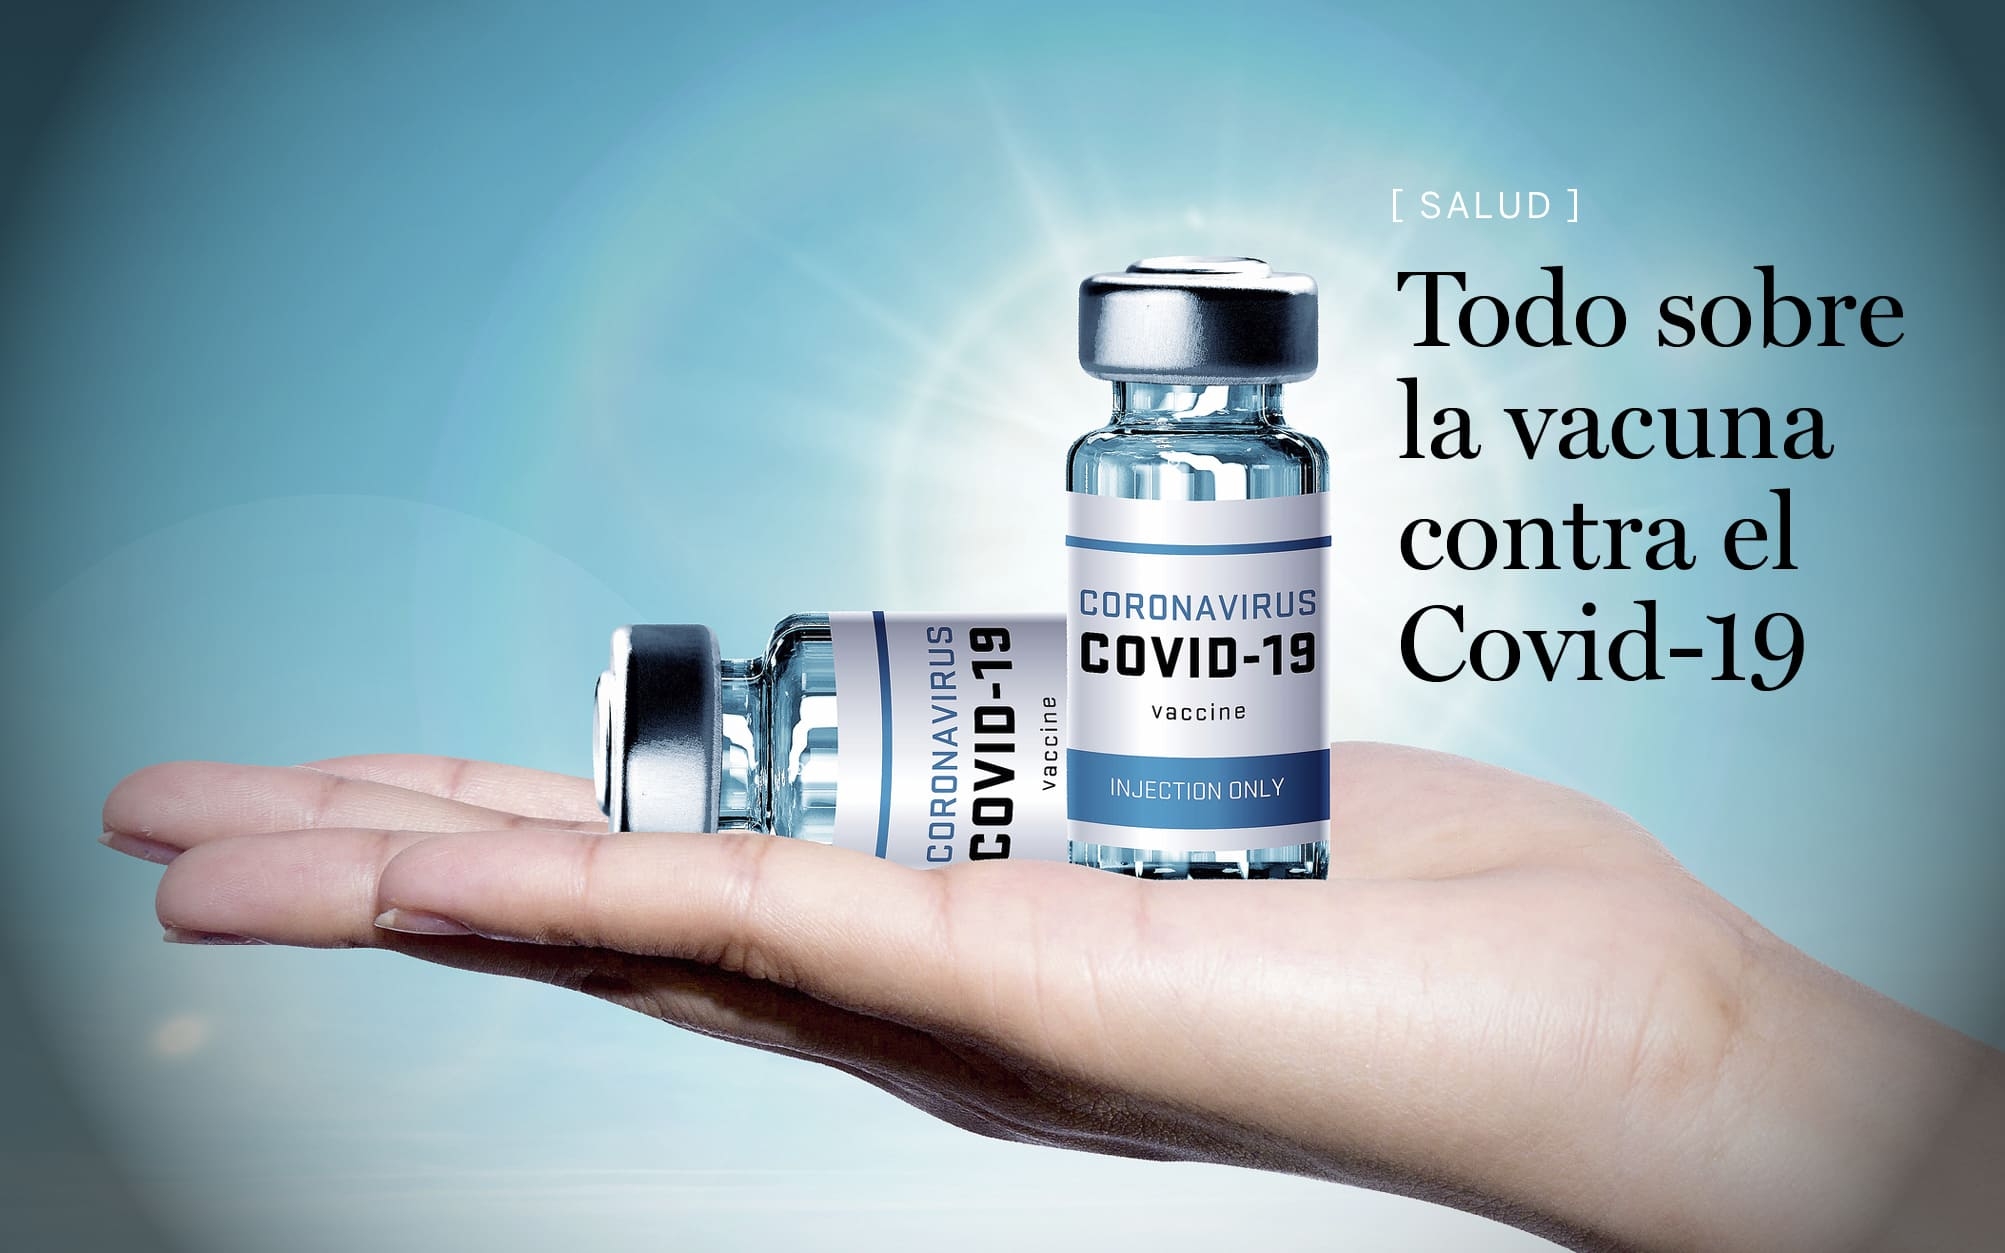 Todo sobre la vacuna del Covid-19 (parte 1)